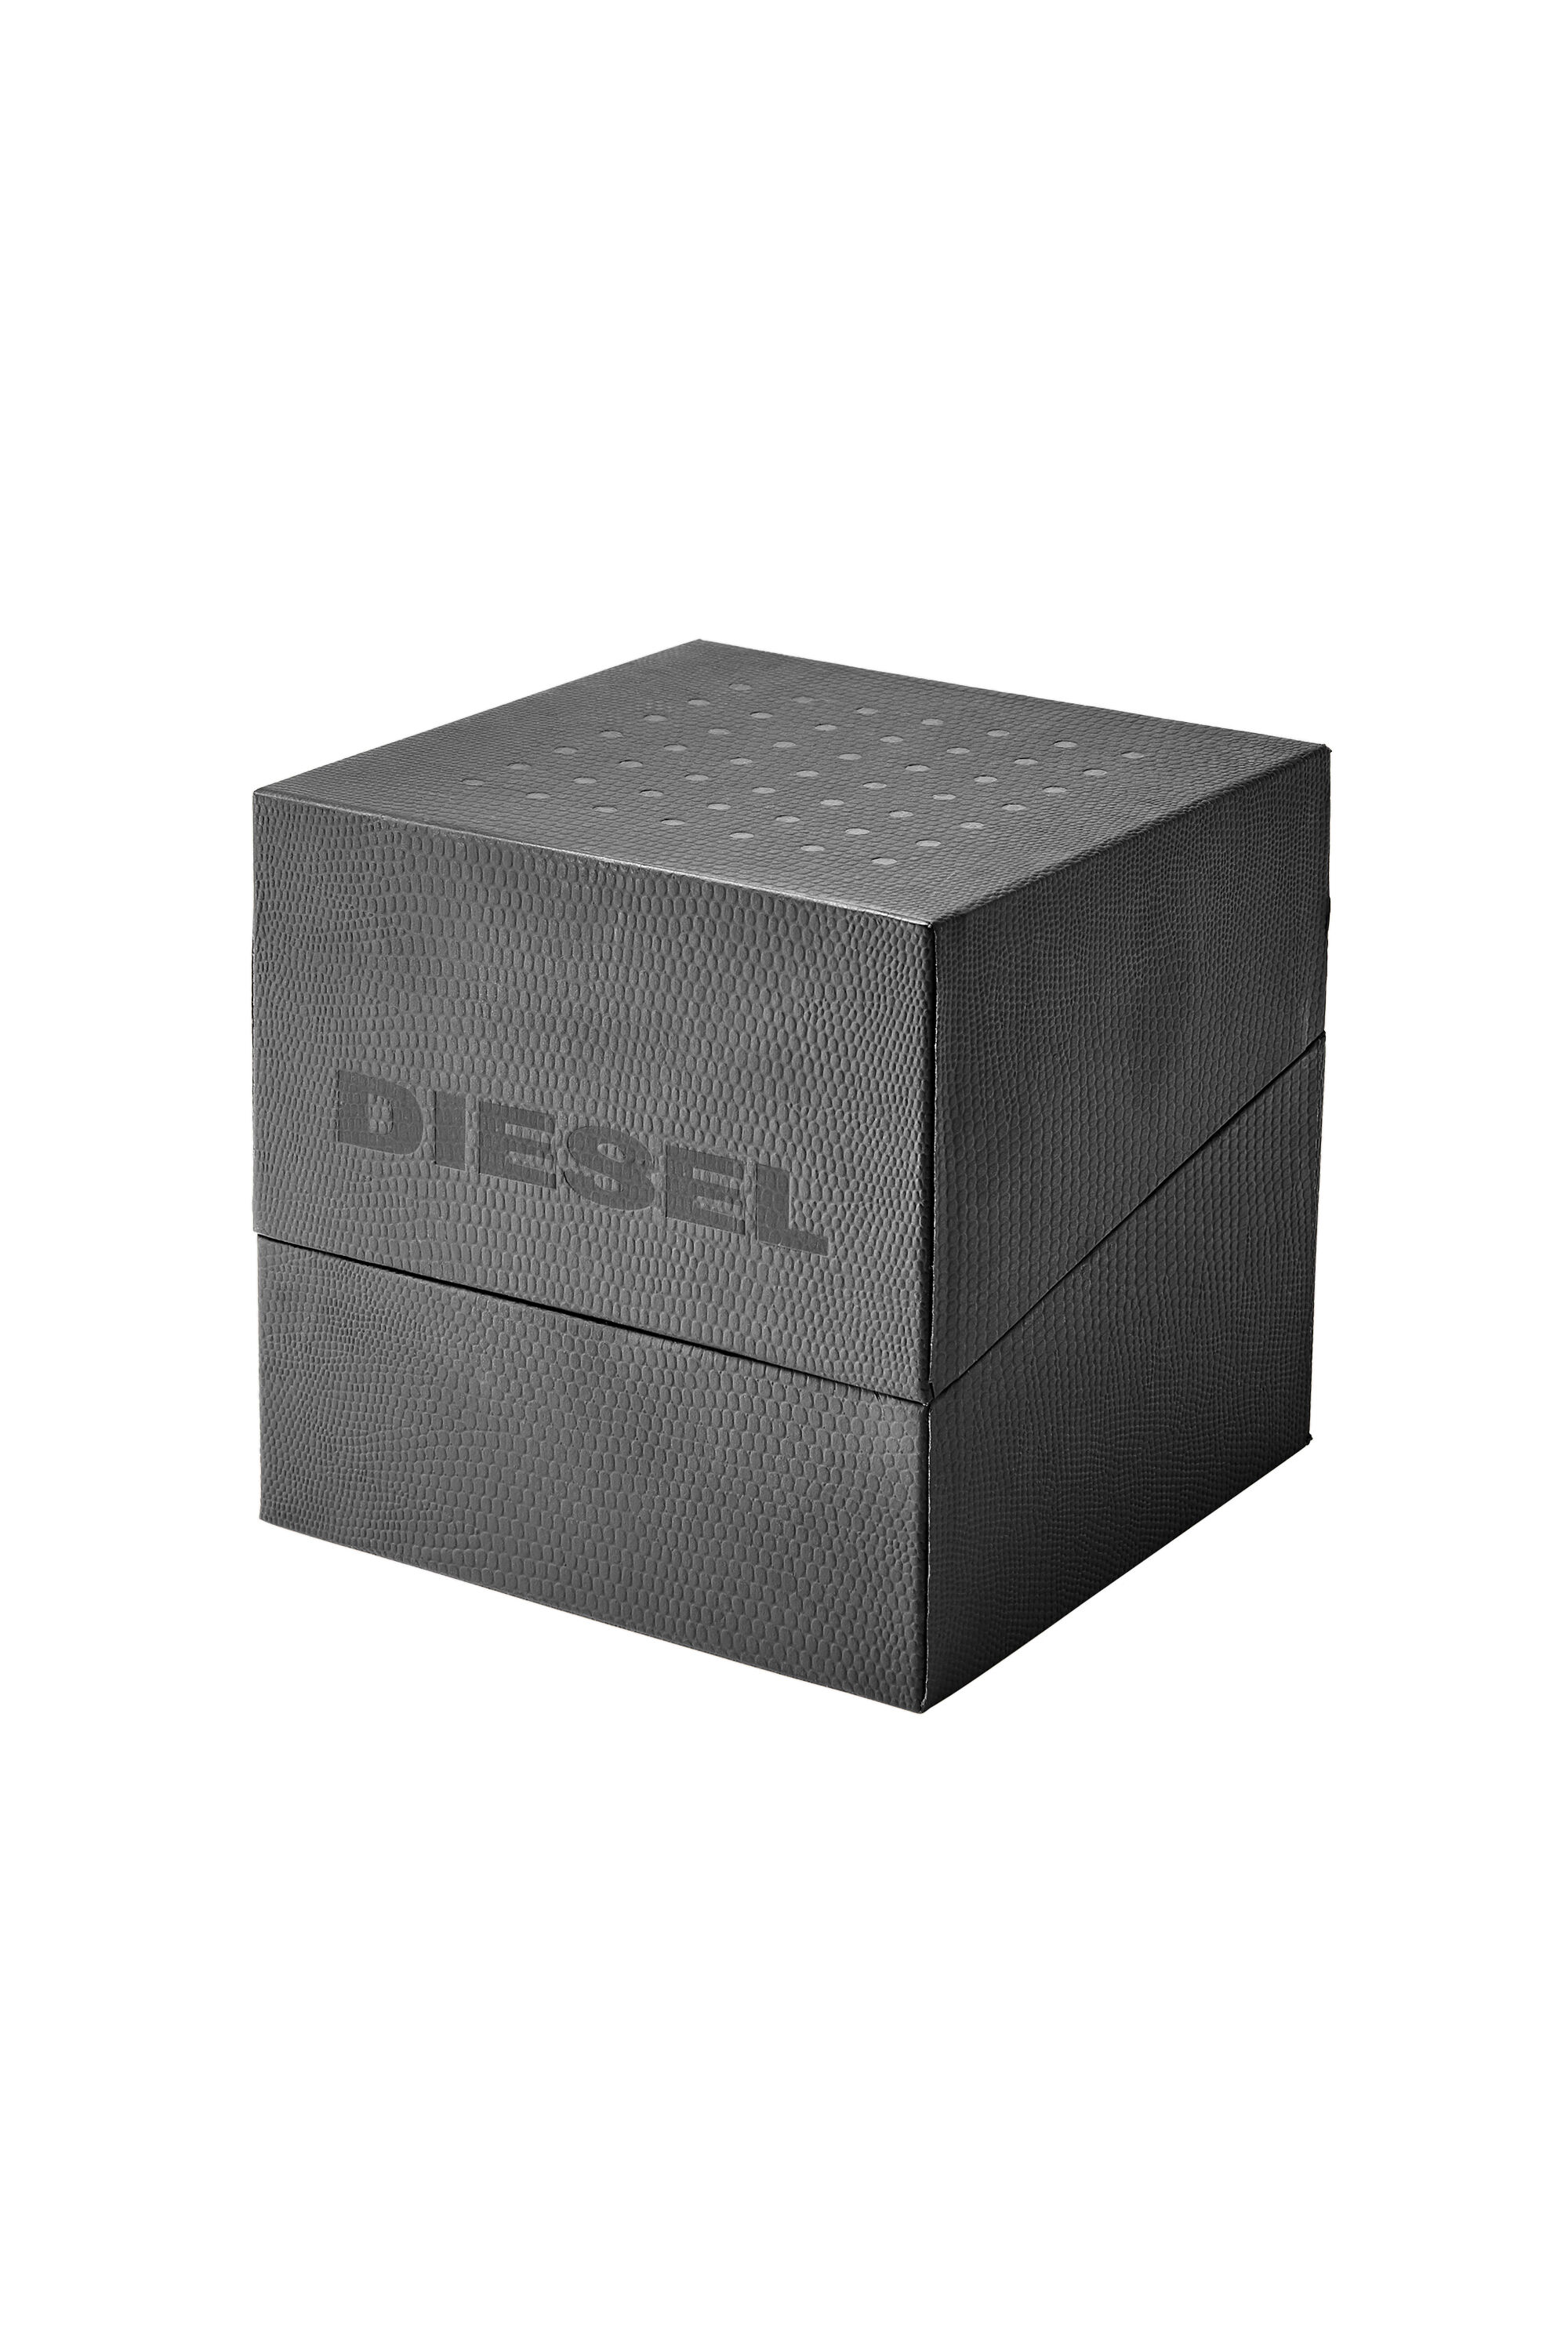 Diesel - DZ1904, Negro - Image 4